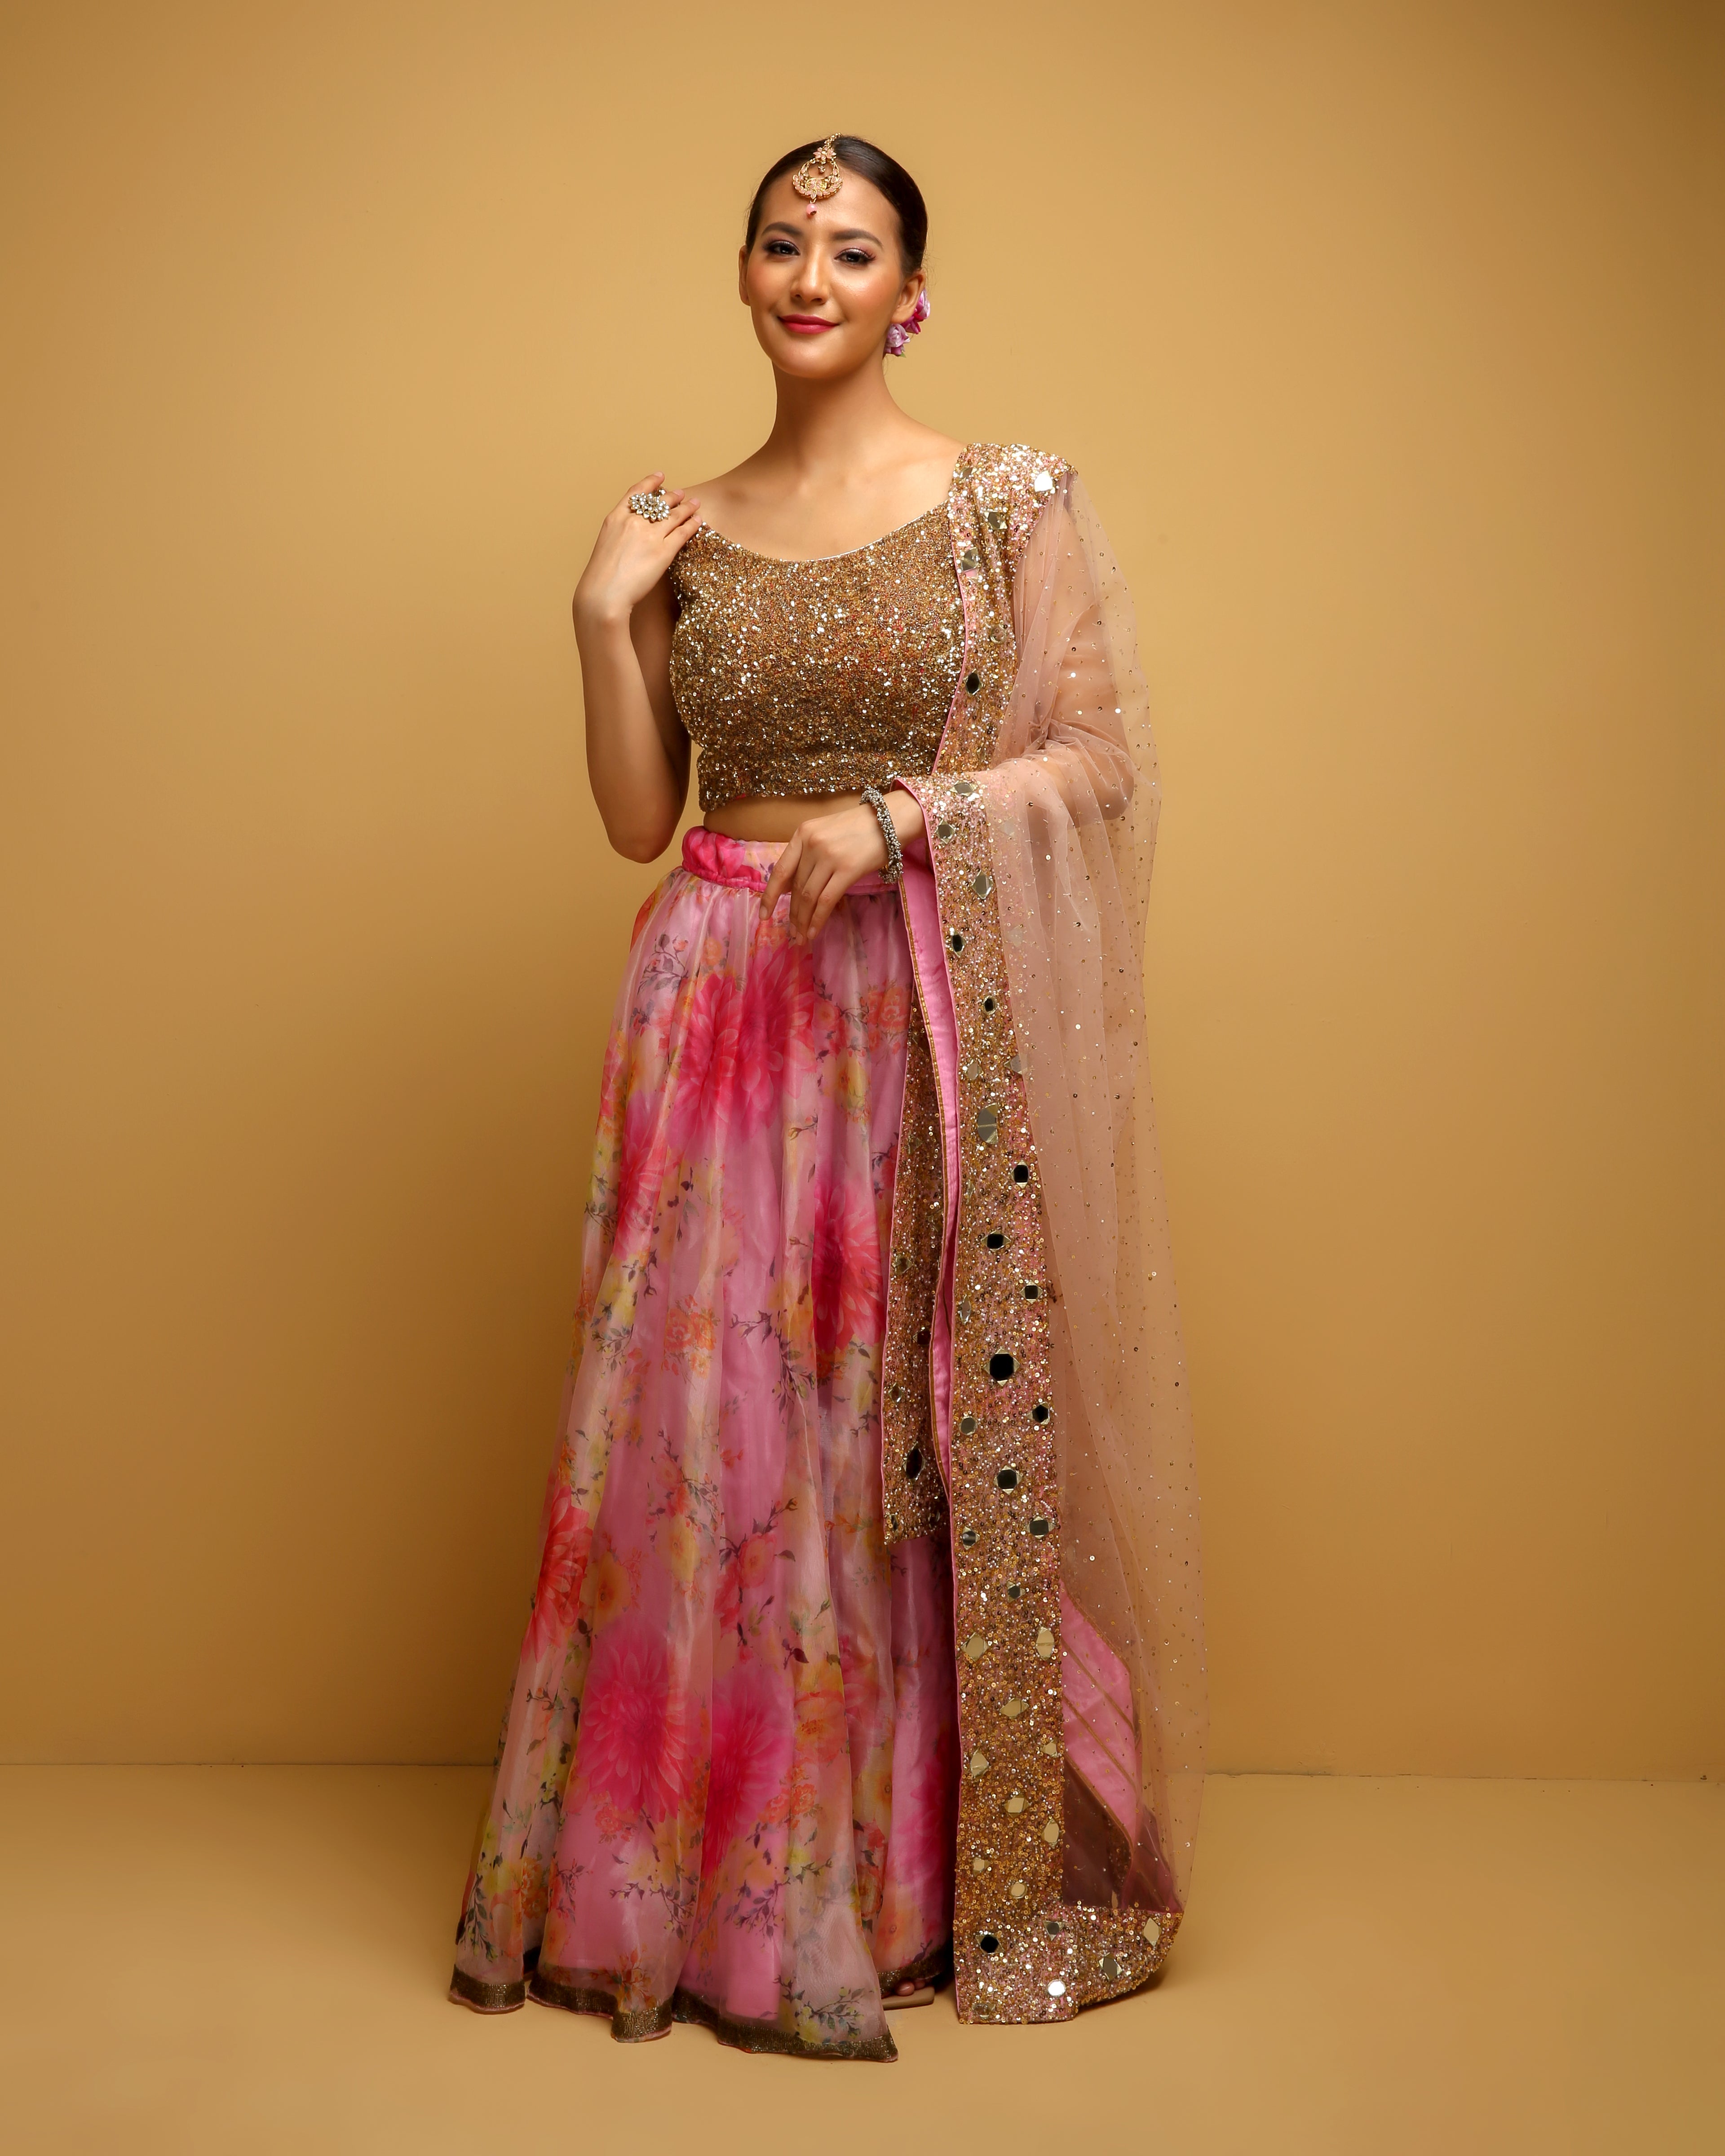 Fuchsia Pink & Gold Embellished #Lehenga With Matching Jacket #Blouse. |  Indian bridal lehenga, Indian bridal, Bridal dresses